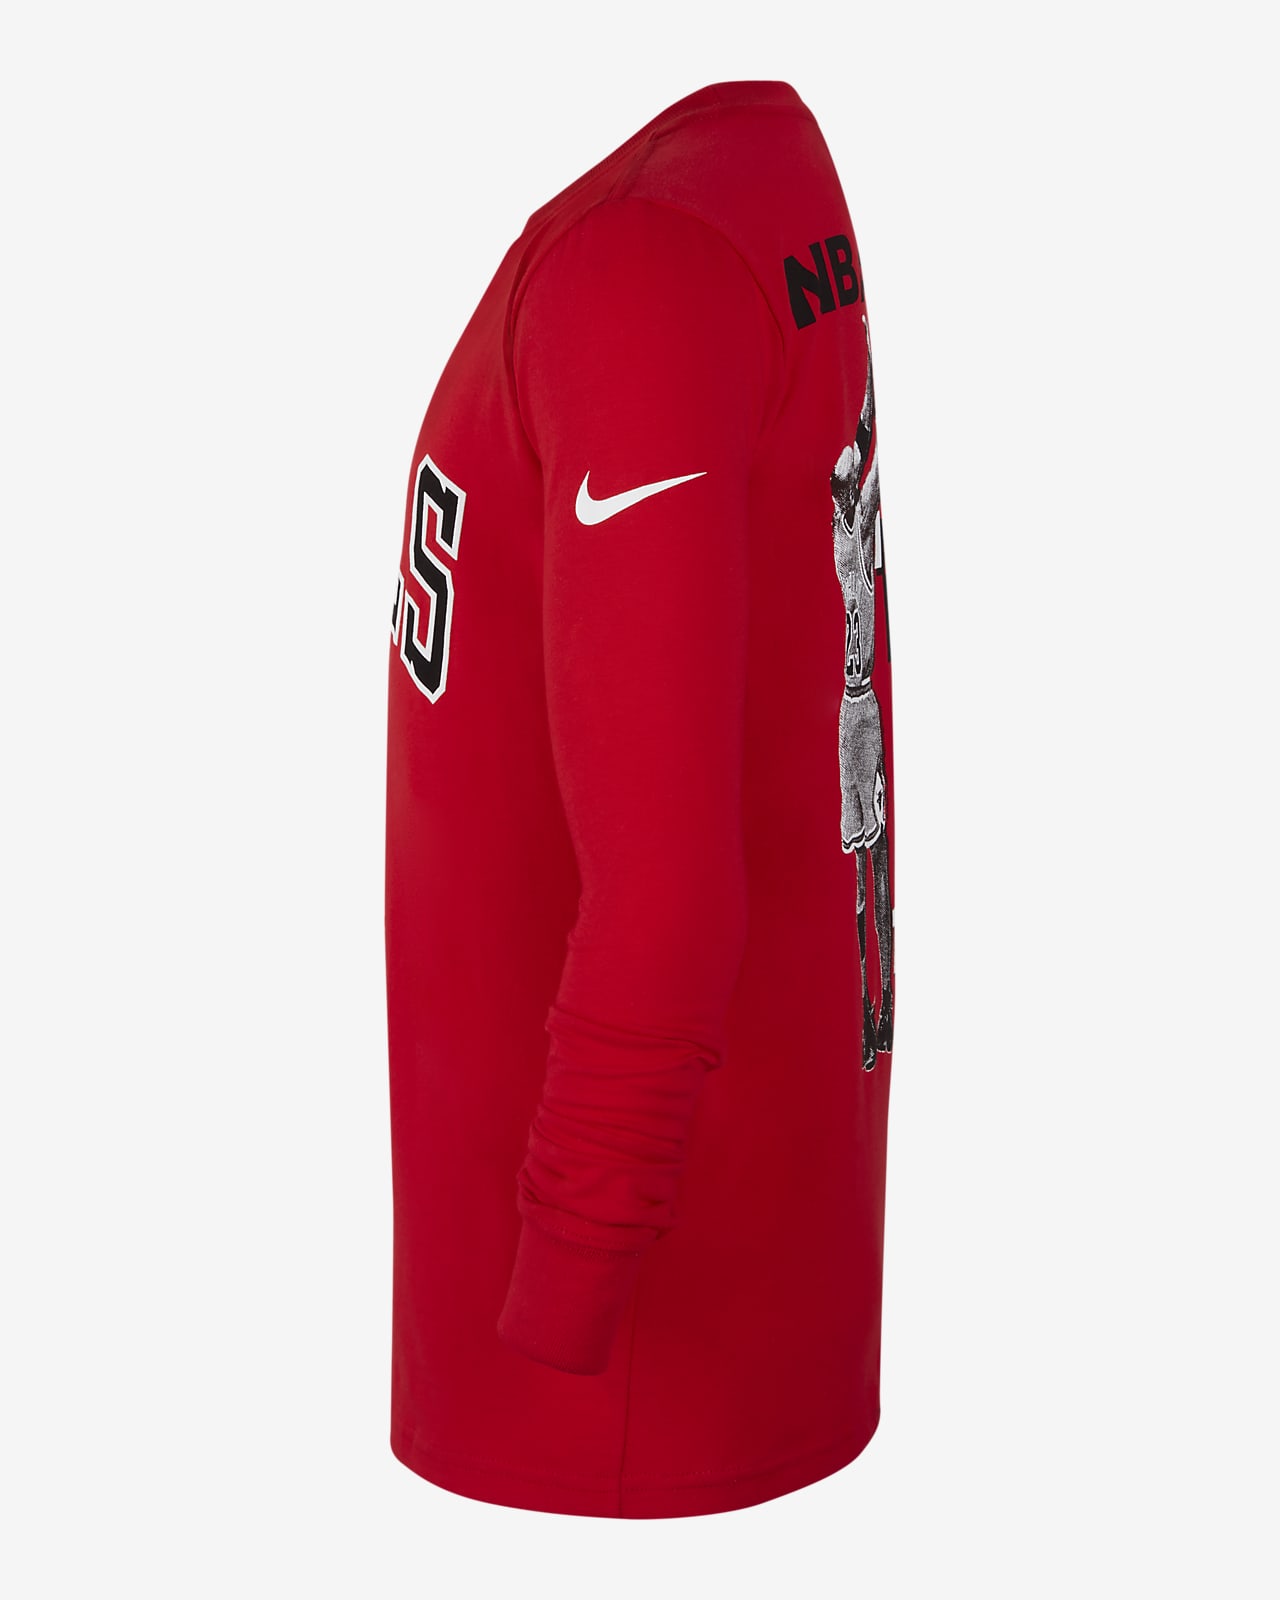 Chicago Bulls. Camisetas y equipaciones. Nike ES